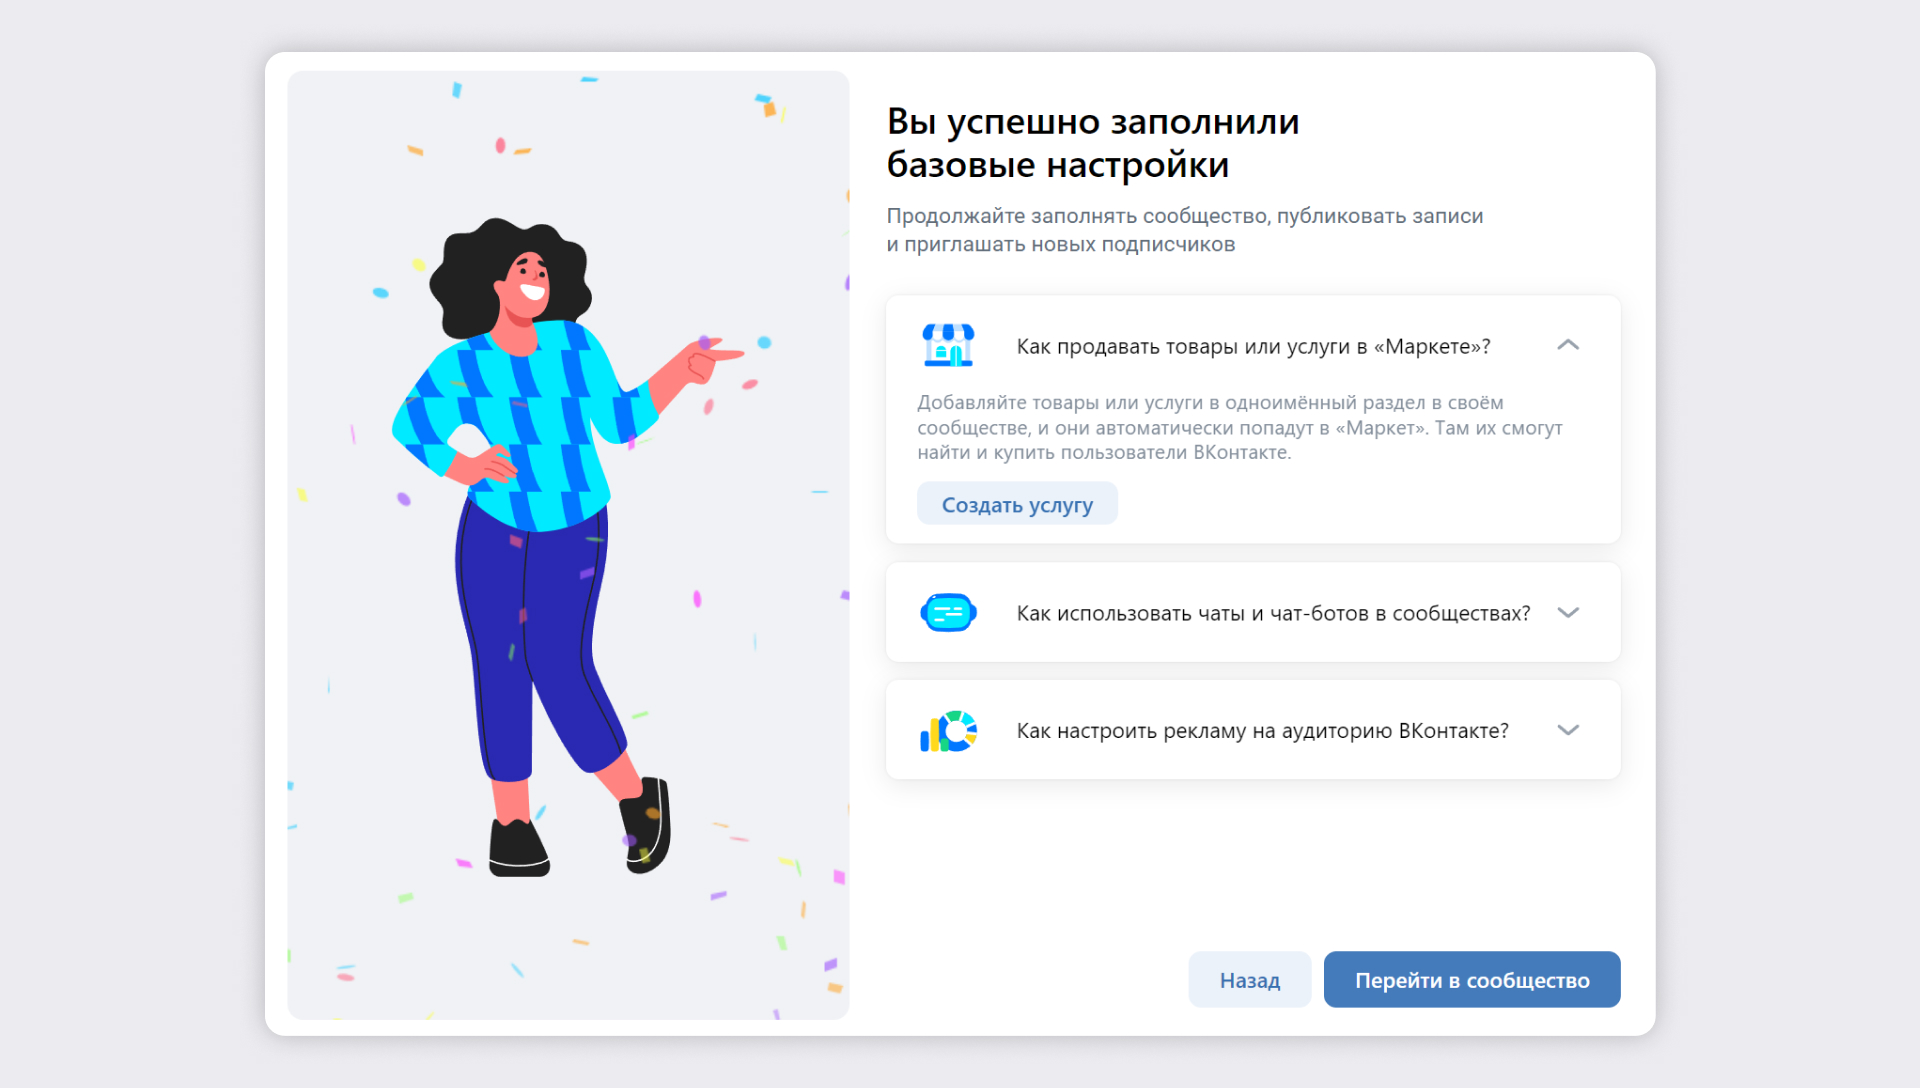 Как добавить историю в сообщество во ВКонтакте